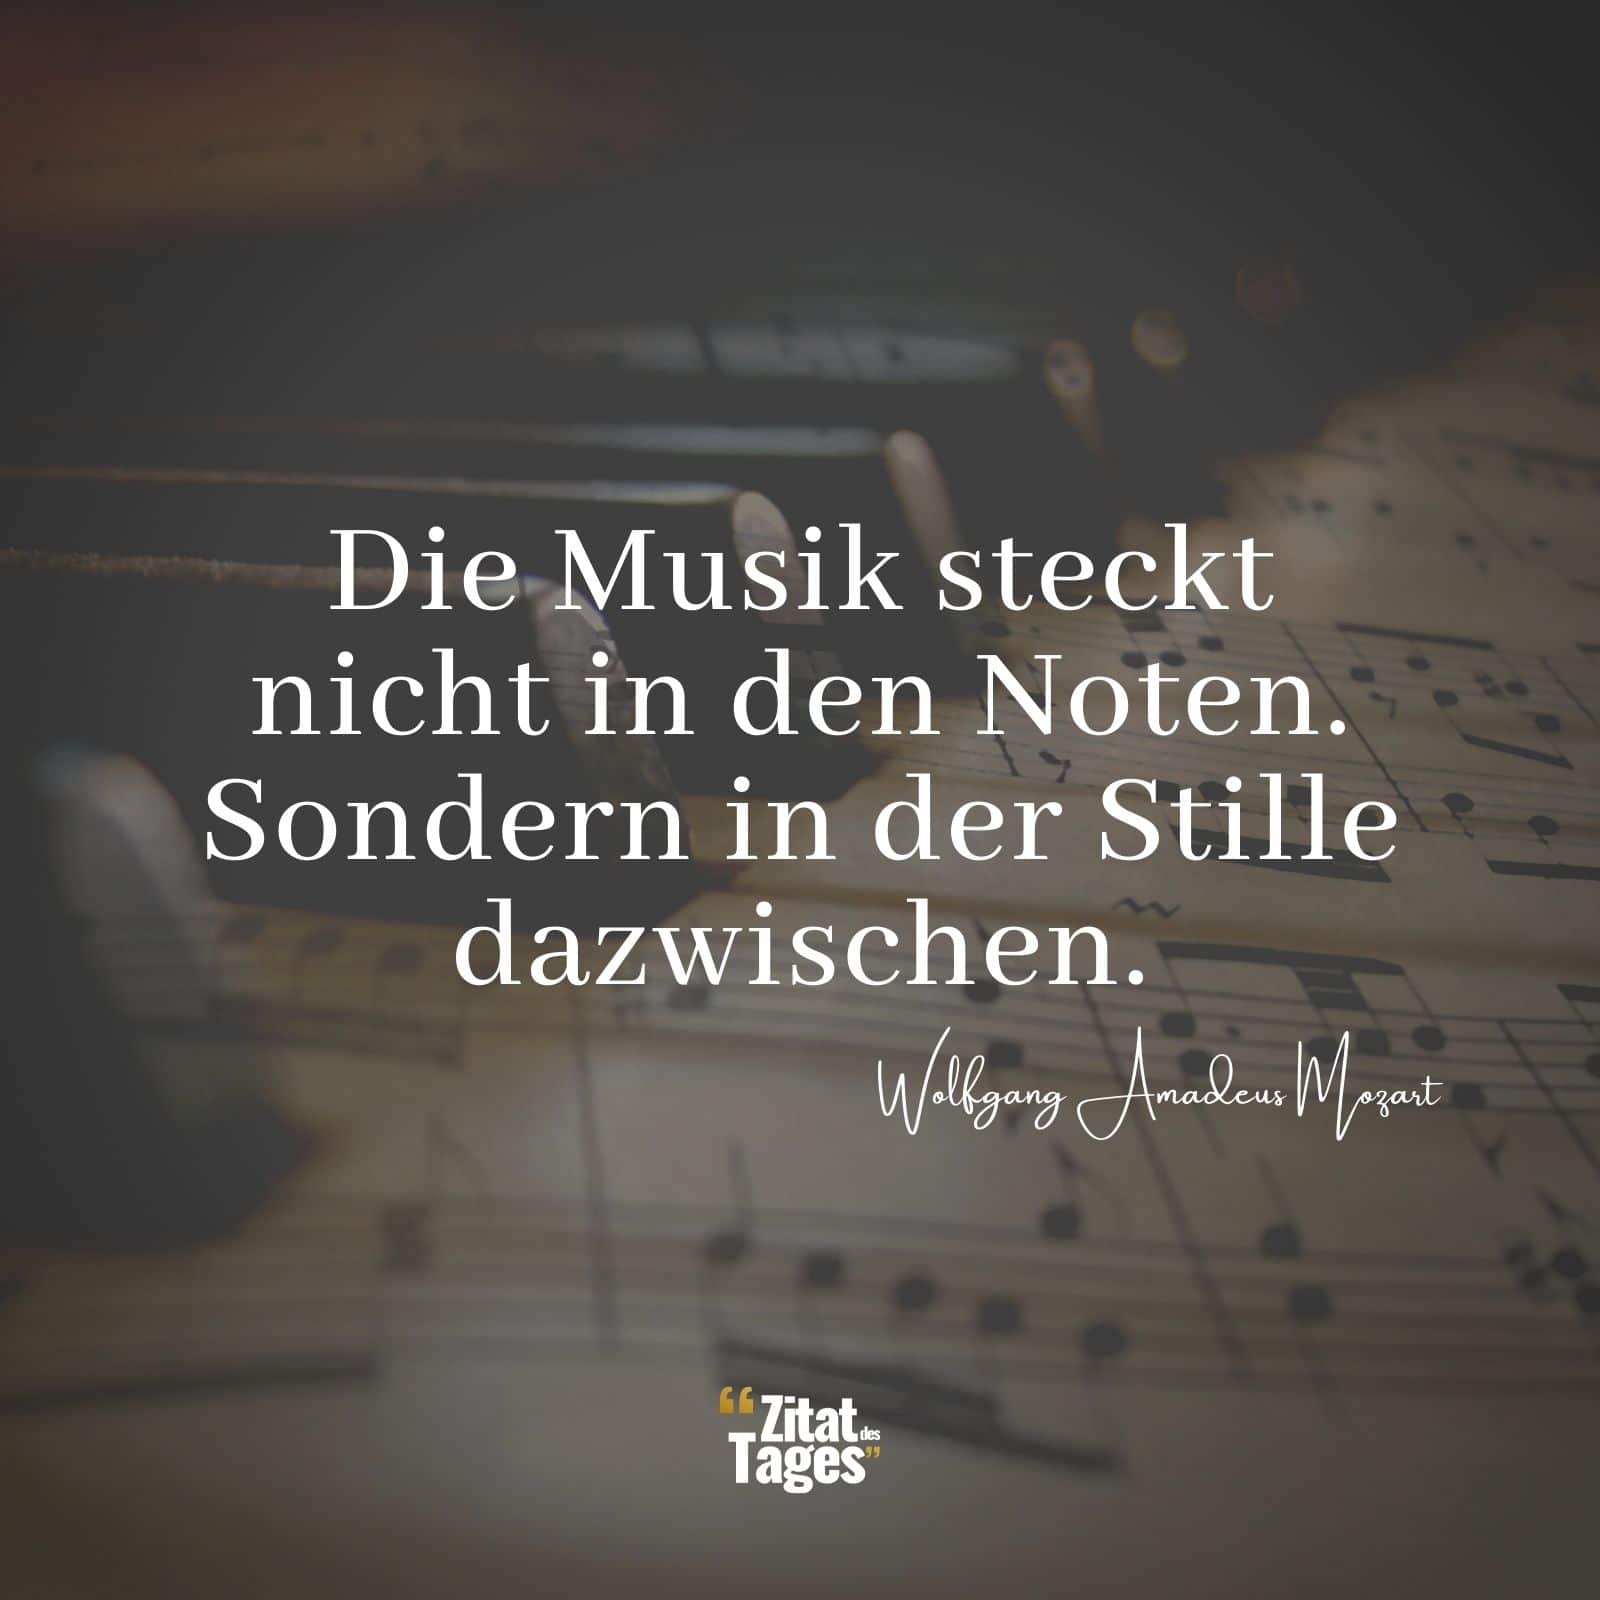 Die Musik steckt nicht in den Noten. Sondern in der Stille dazwischen. - Wolfgang Amadeus Mozart